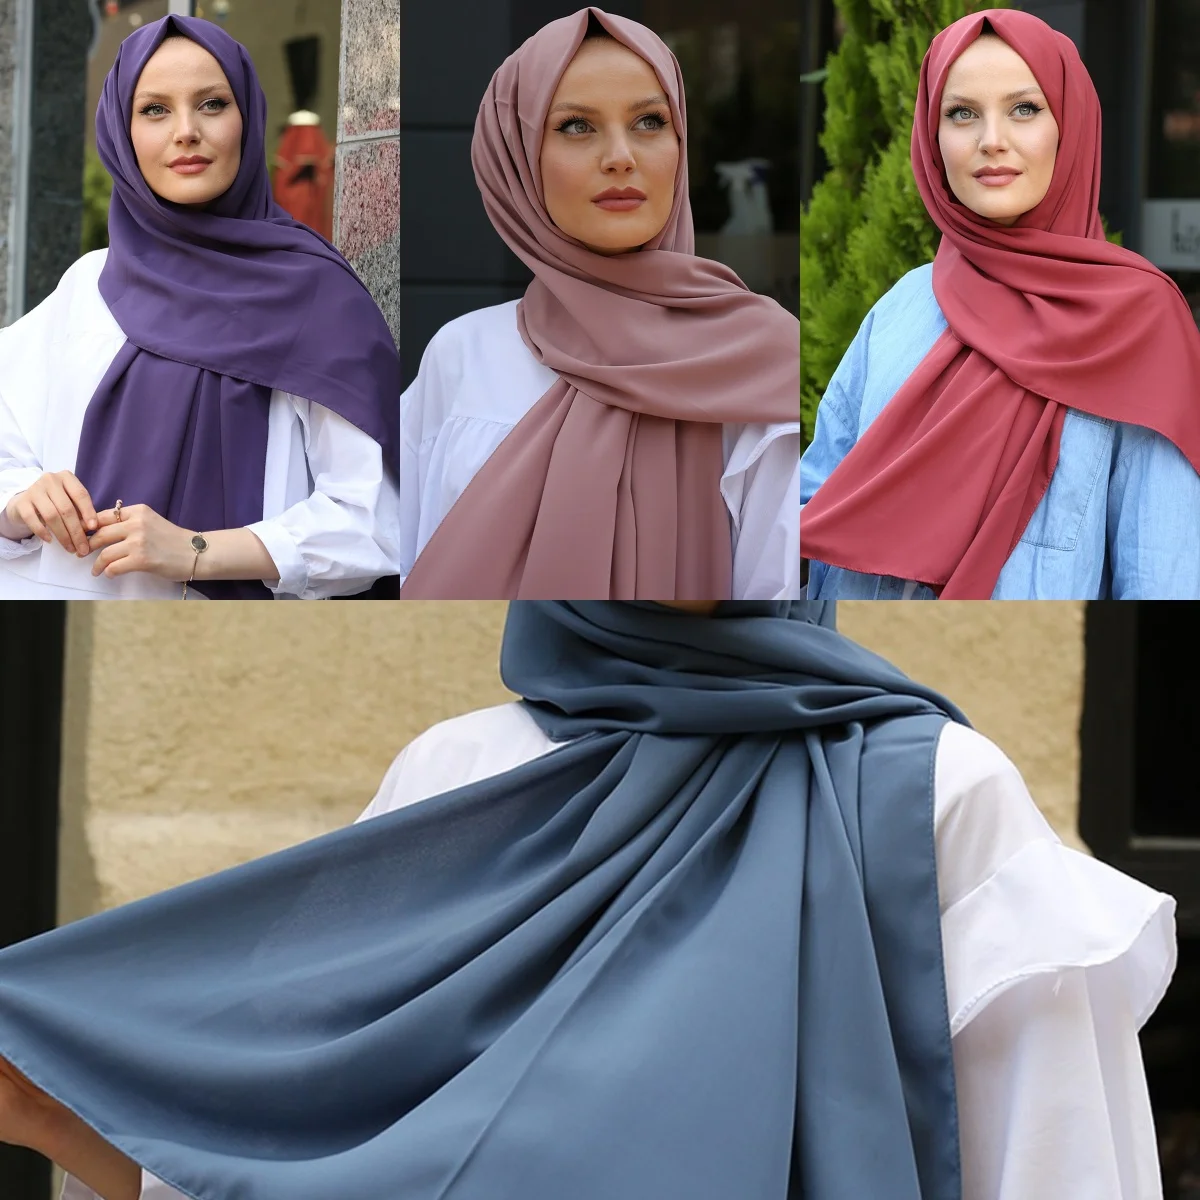 Women Silk Hijab Turban Scarf Shawl Wrap Solid Color Muslim Women's Fashion Islamic Clothing Musulman Headscarf 2021 New Wraps